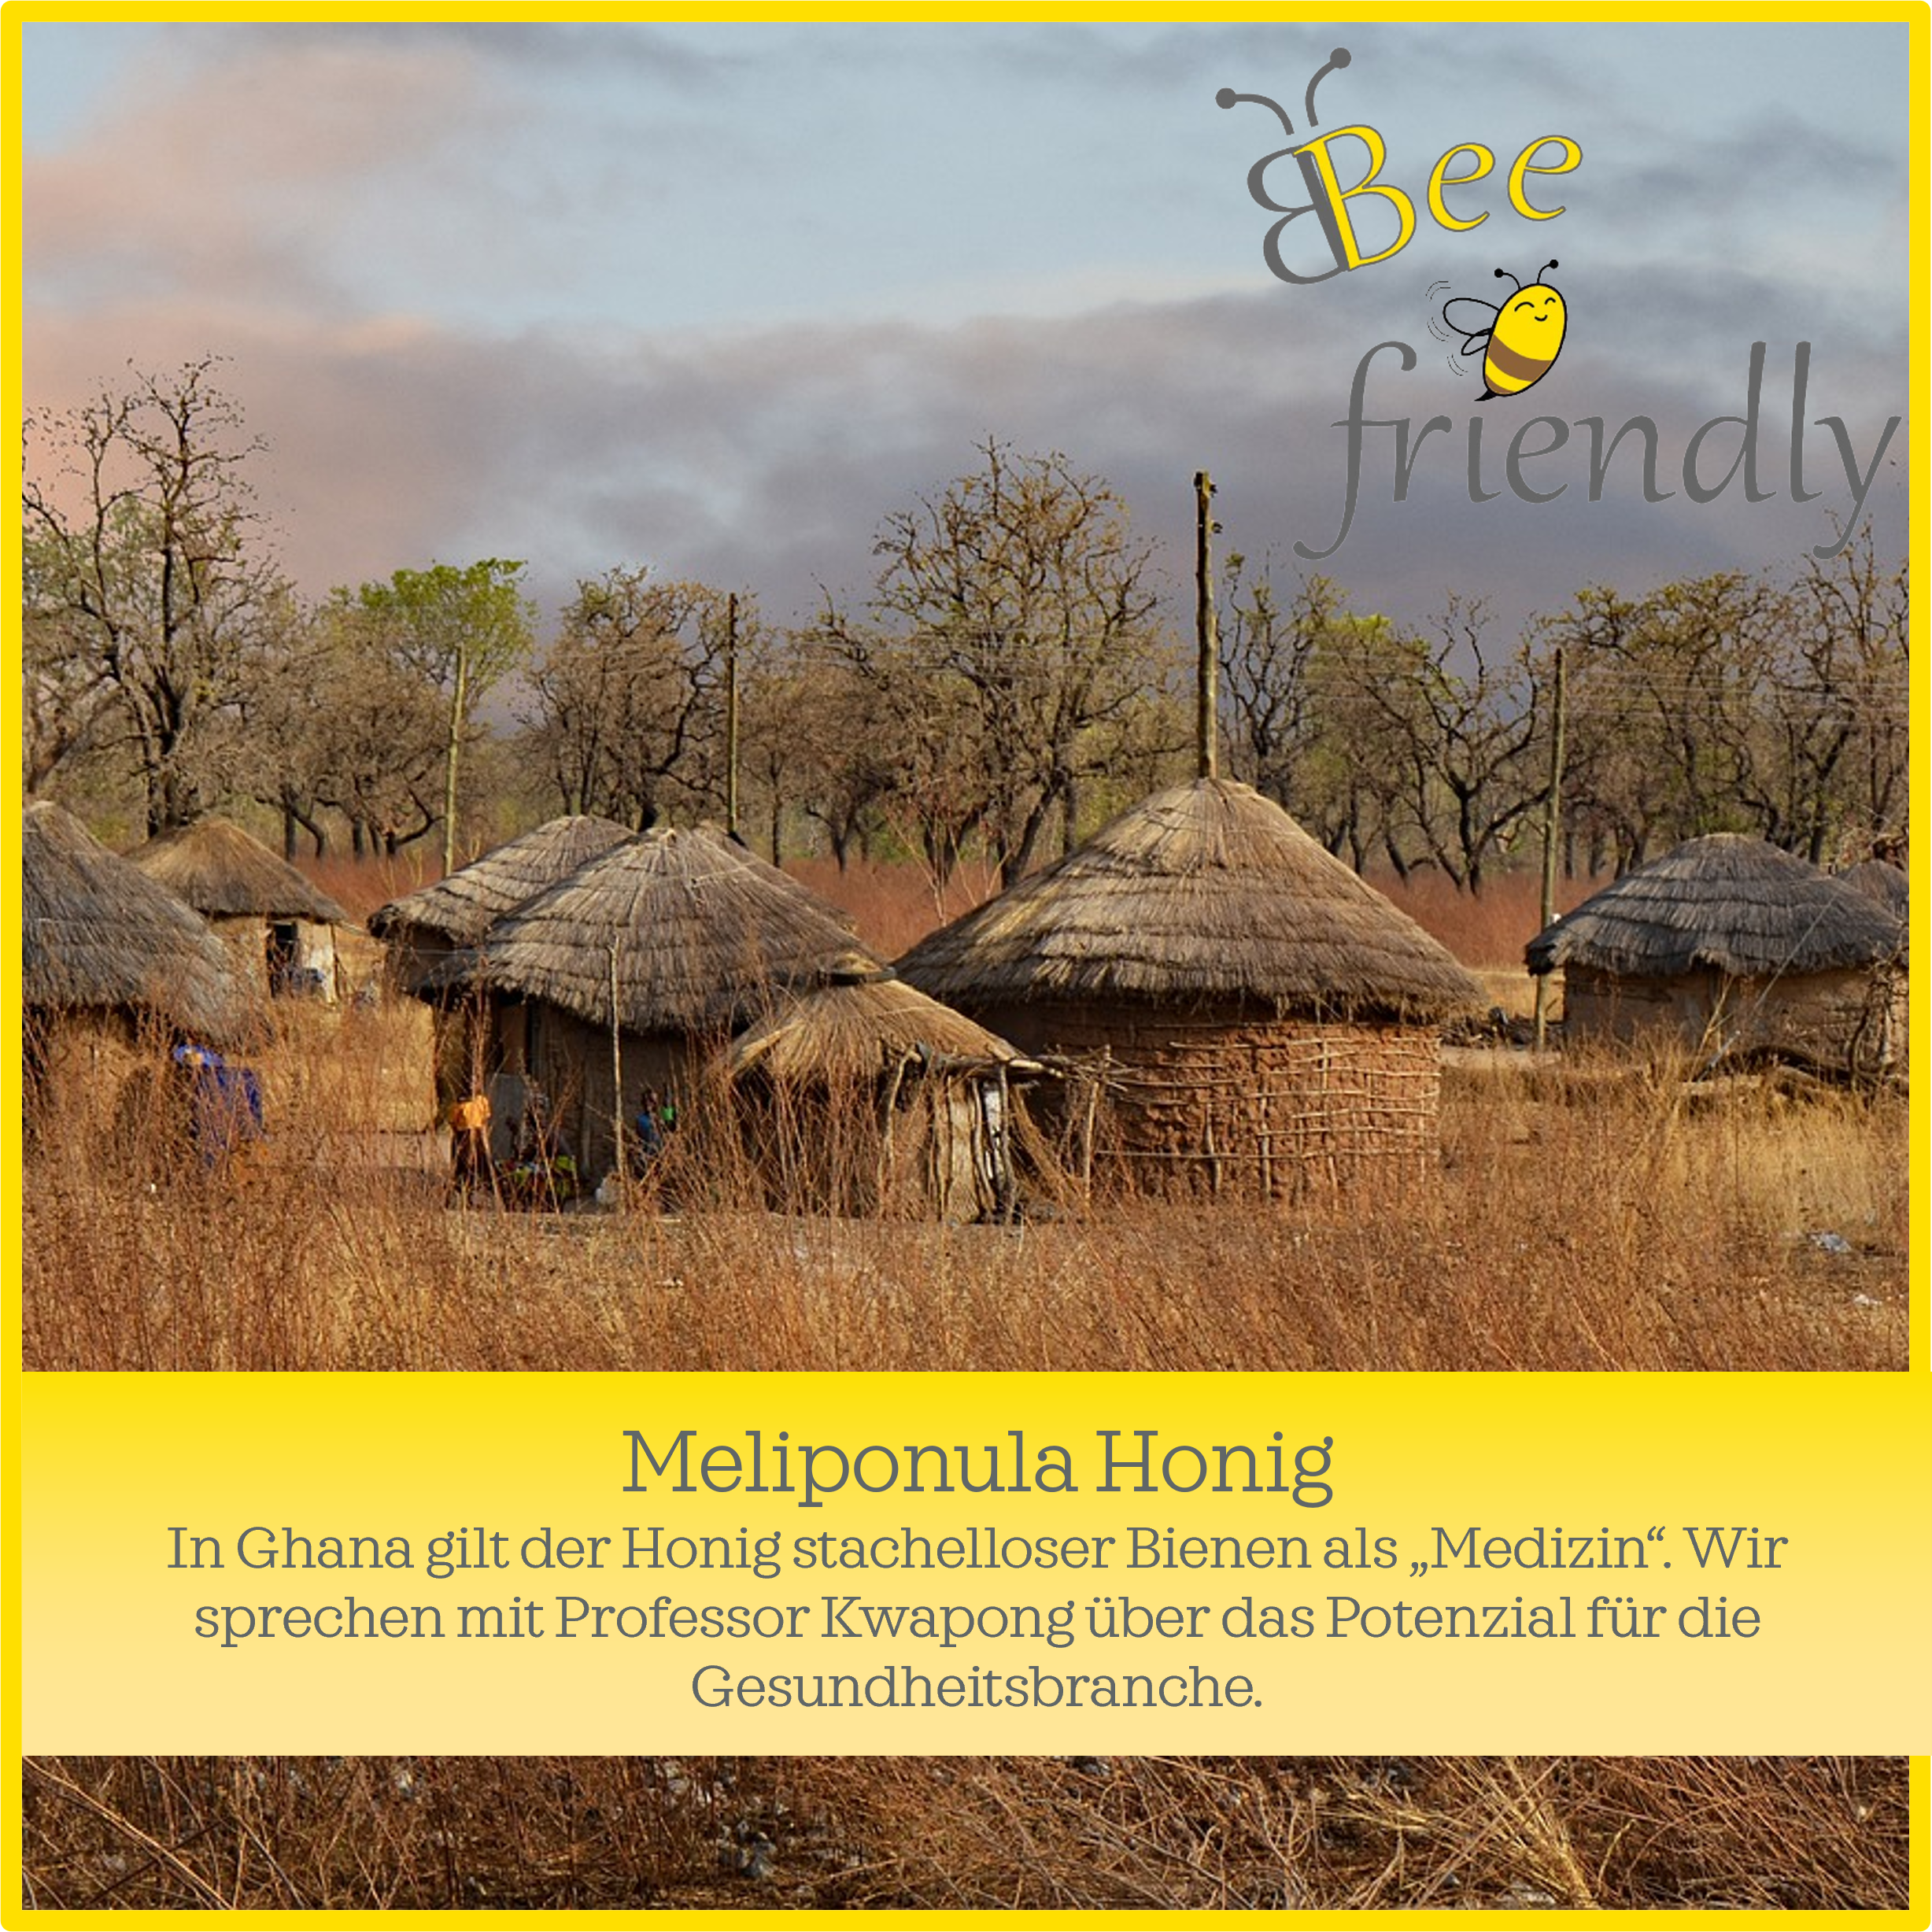 Meliponula-Produkte: Welches Potenzial steckt in Honig von stachellosen Bienen?